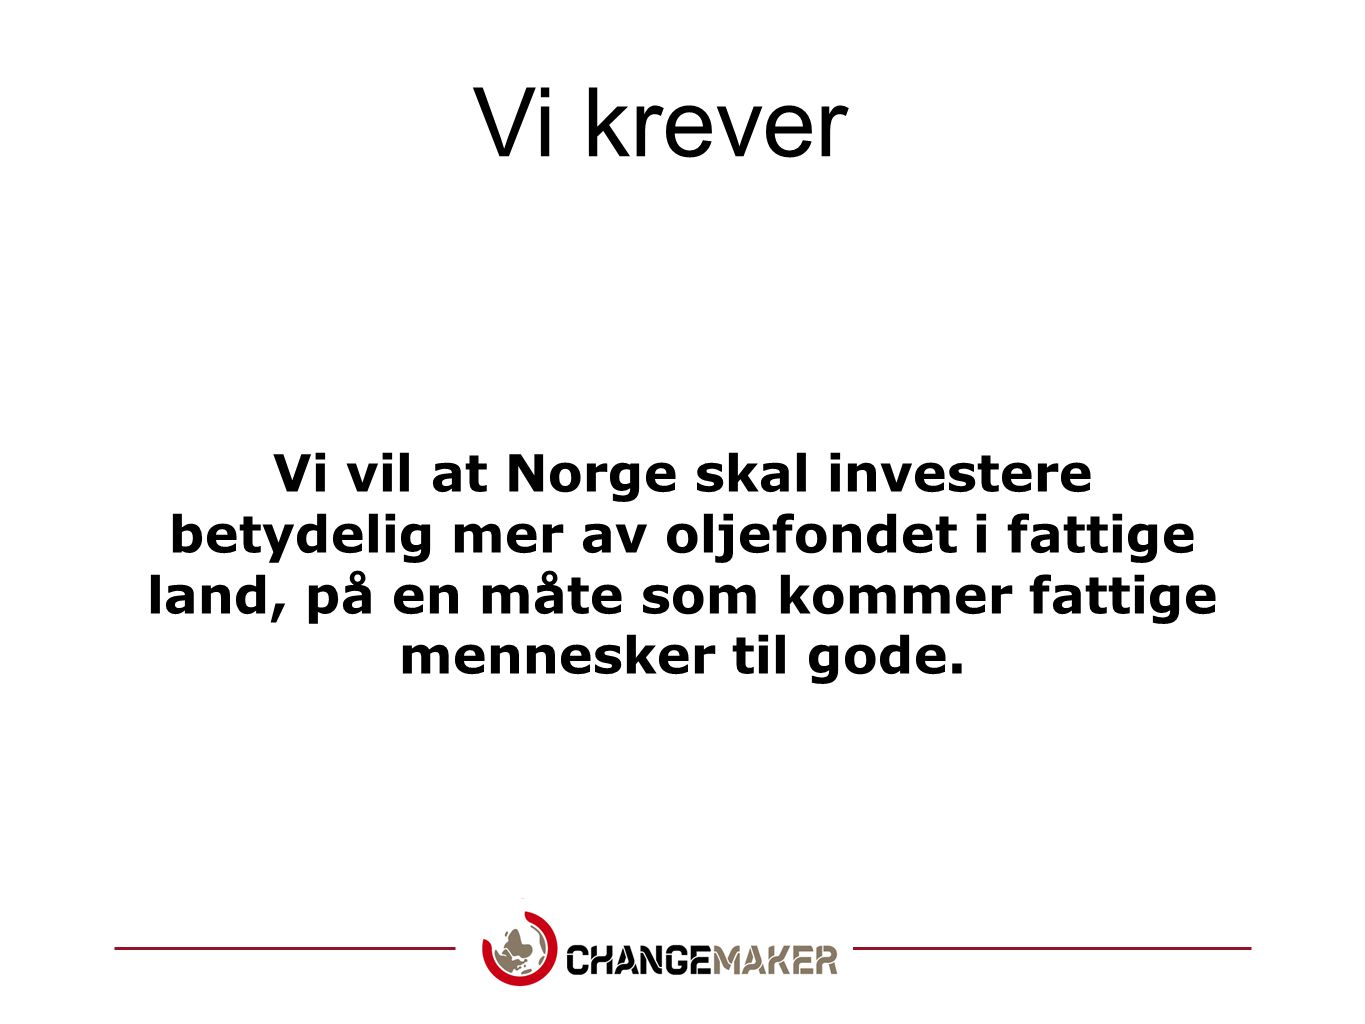 Vi krever Vi vil at Norge skal investere betydelig mer av oljefondet i fattige land, på en måte som kommer fattige mennesker til gode.